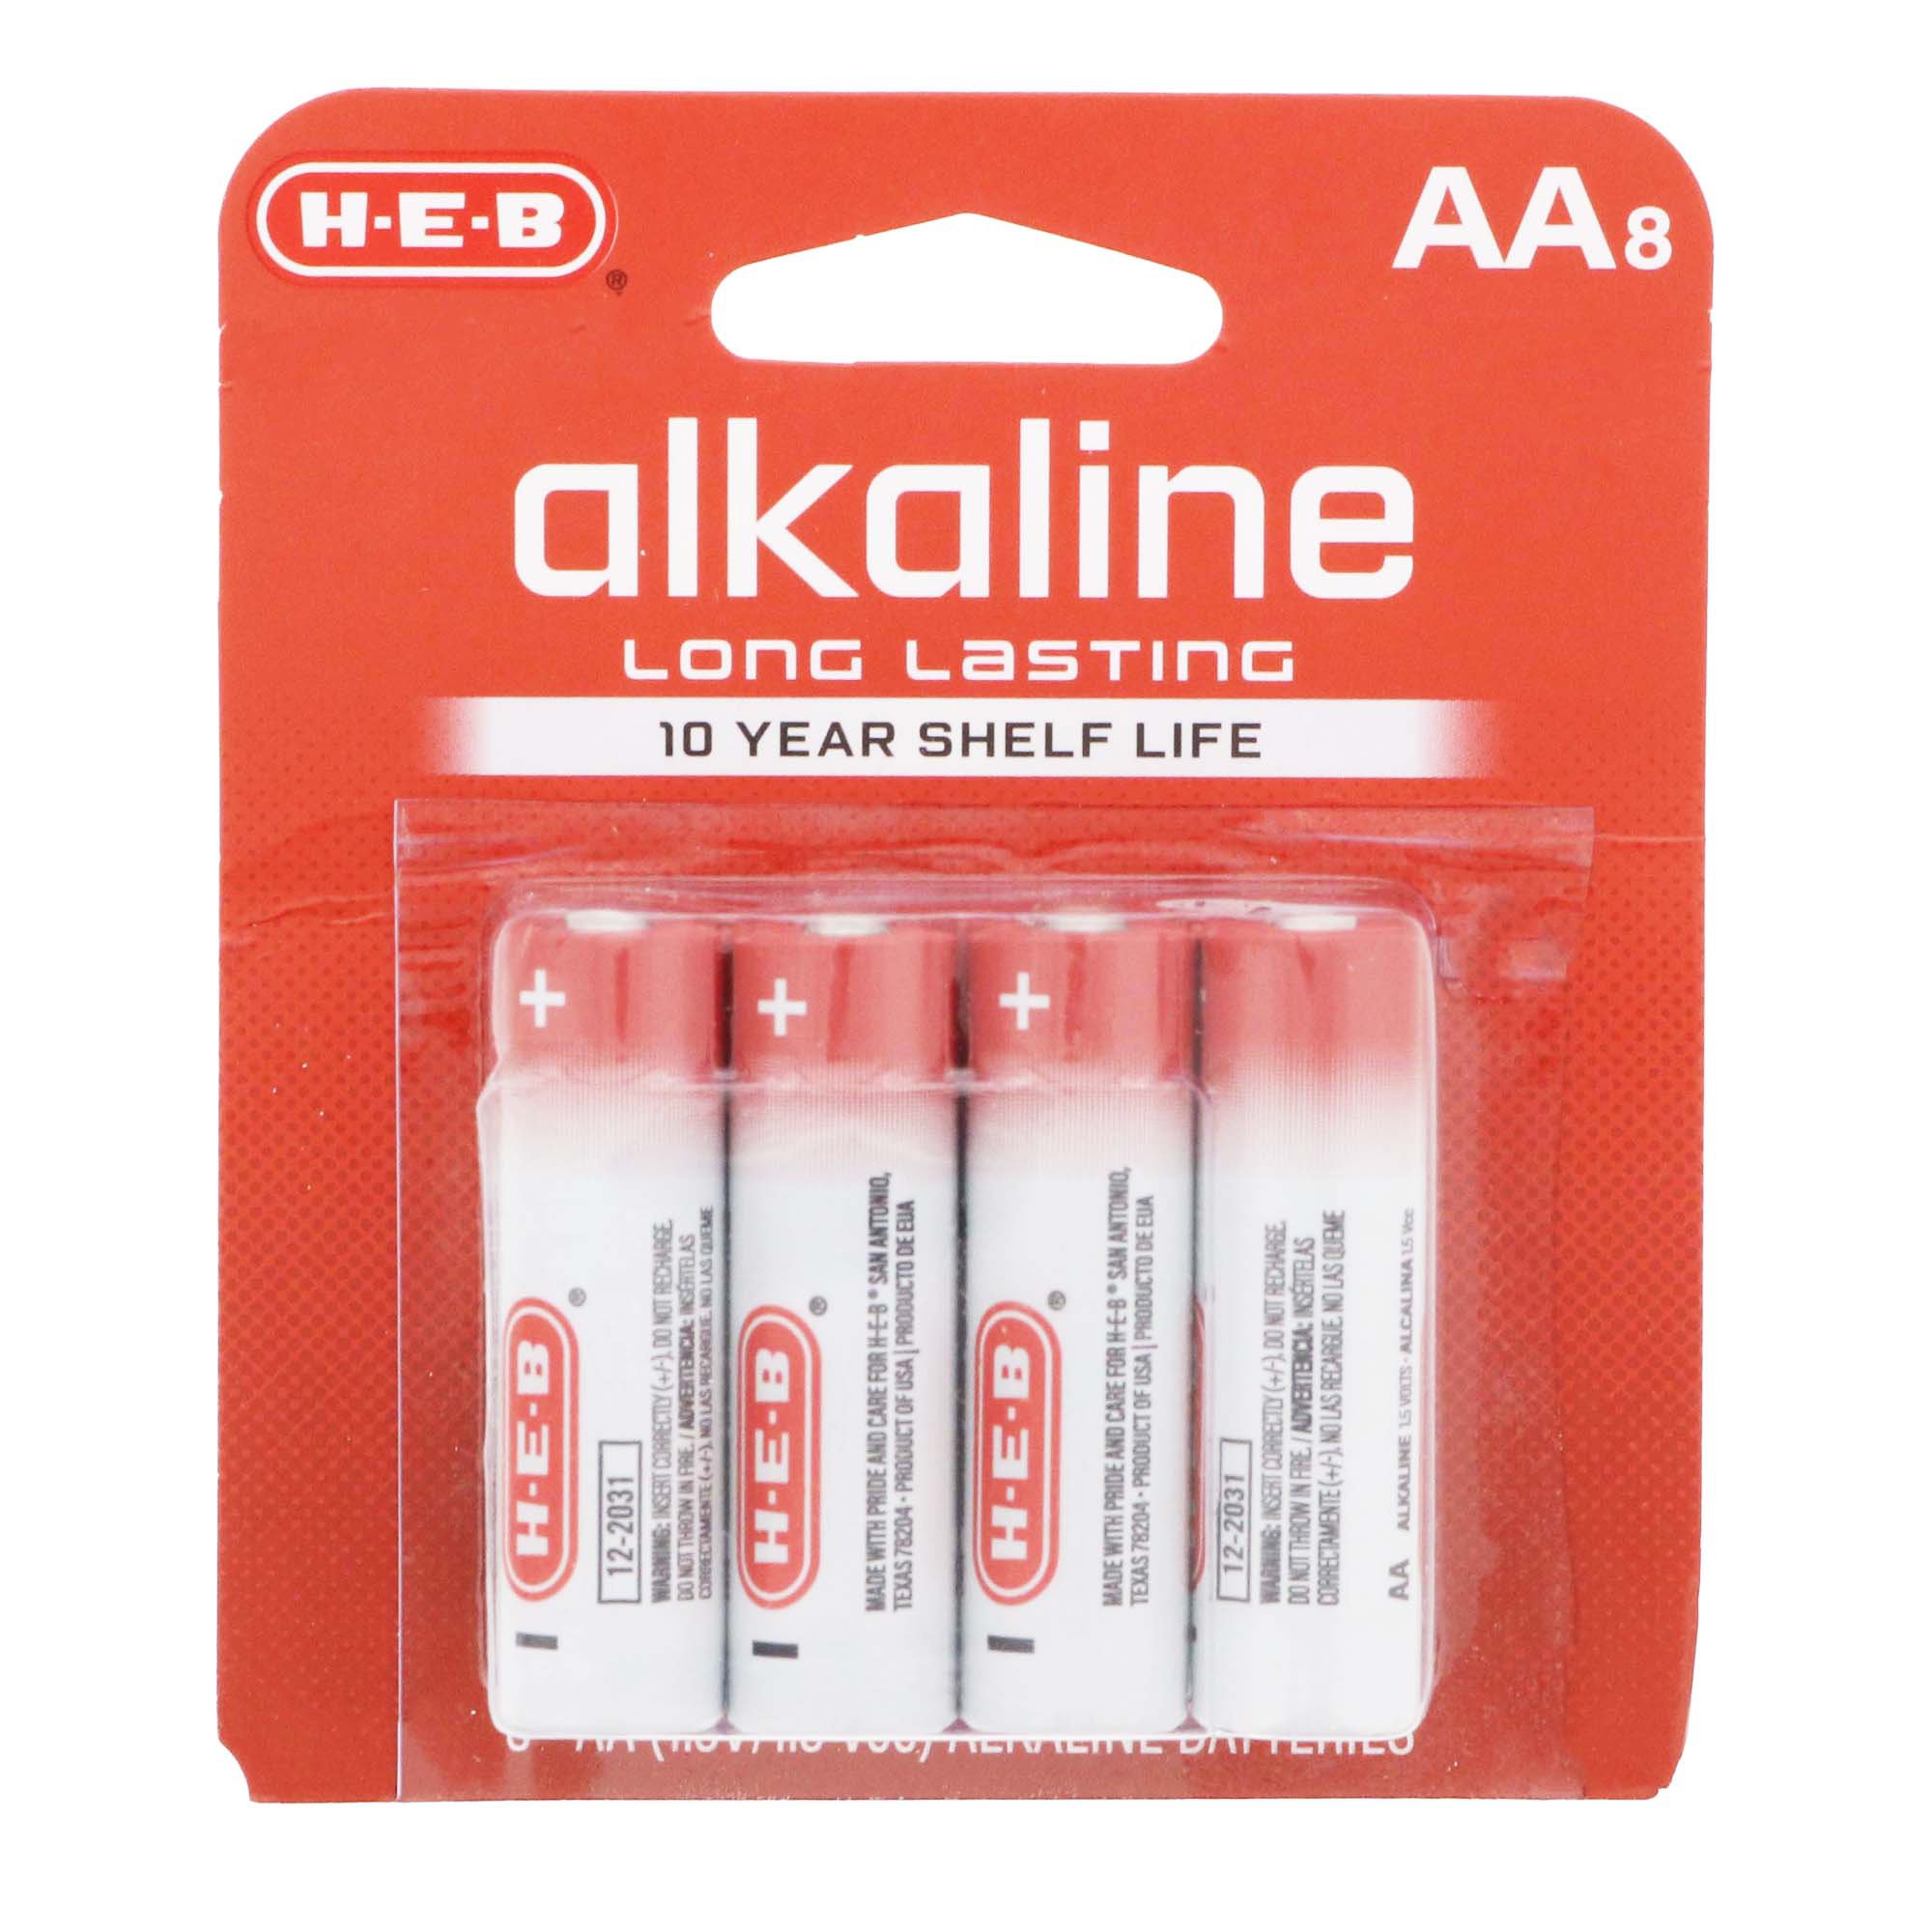 BATTERY AA. Alkaline battery